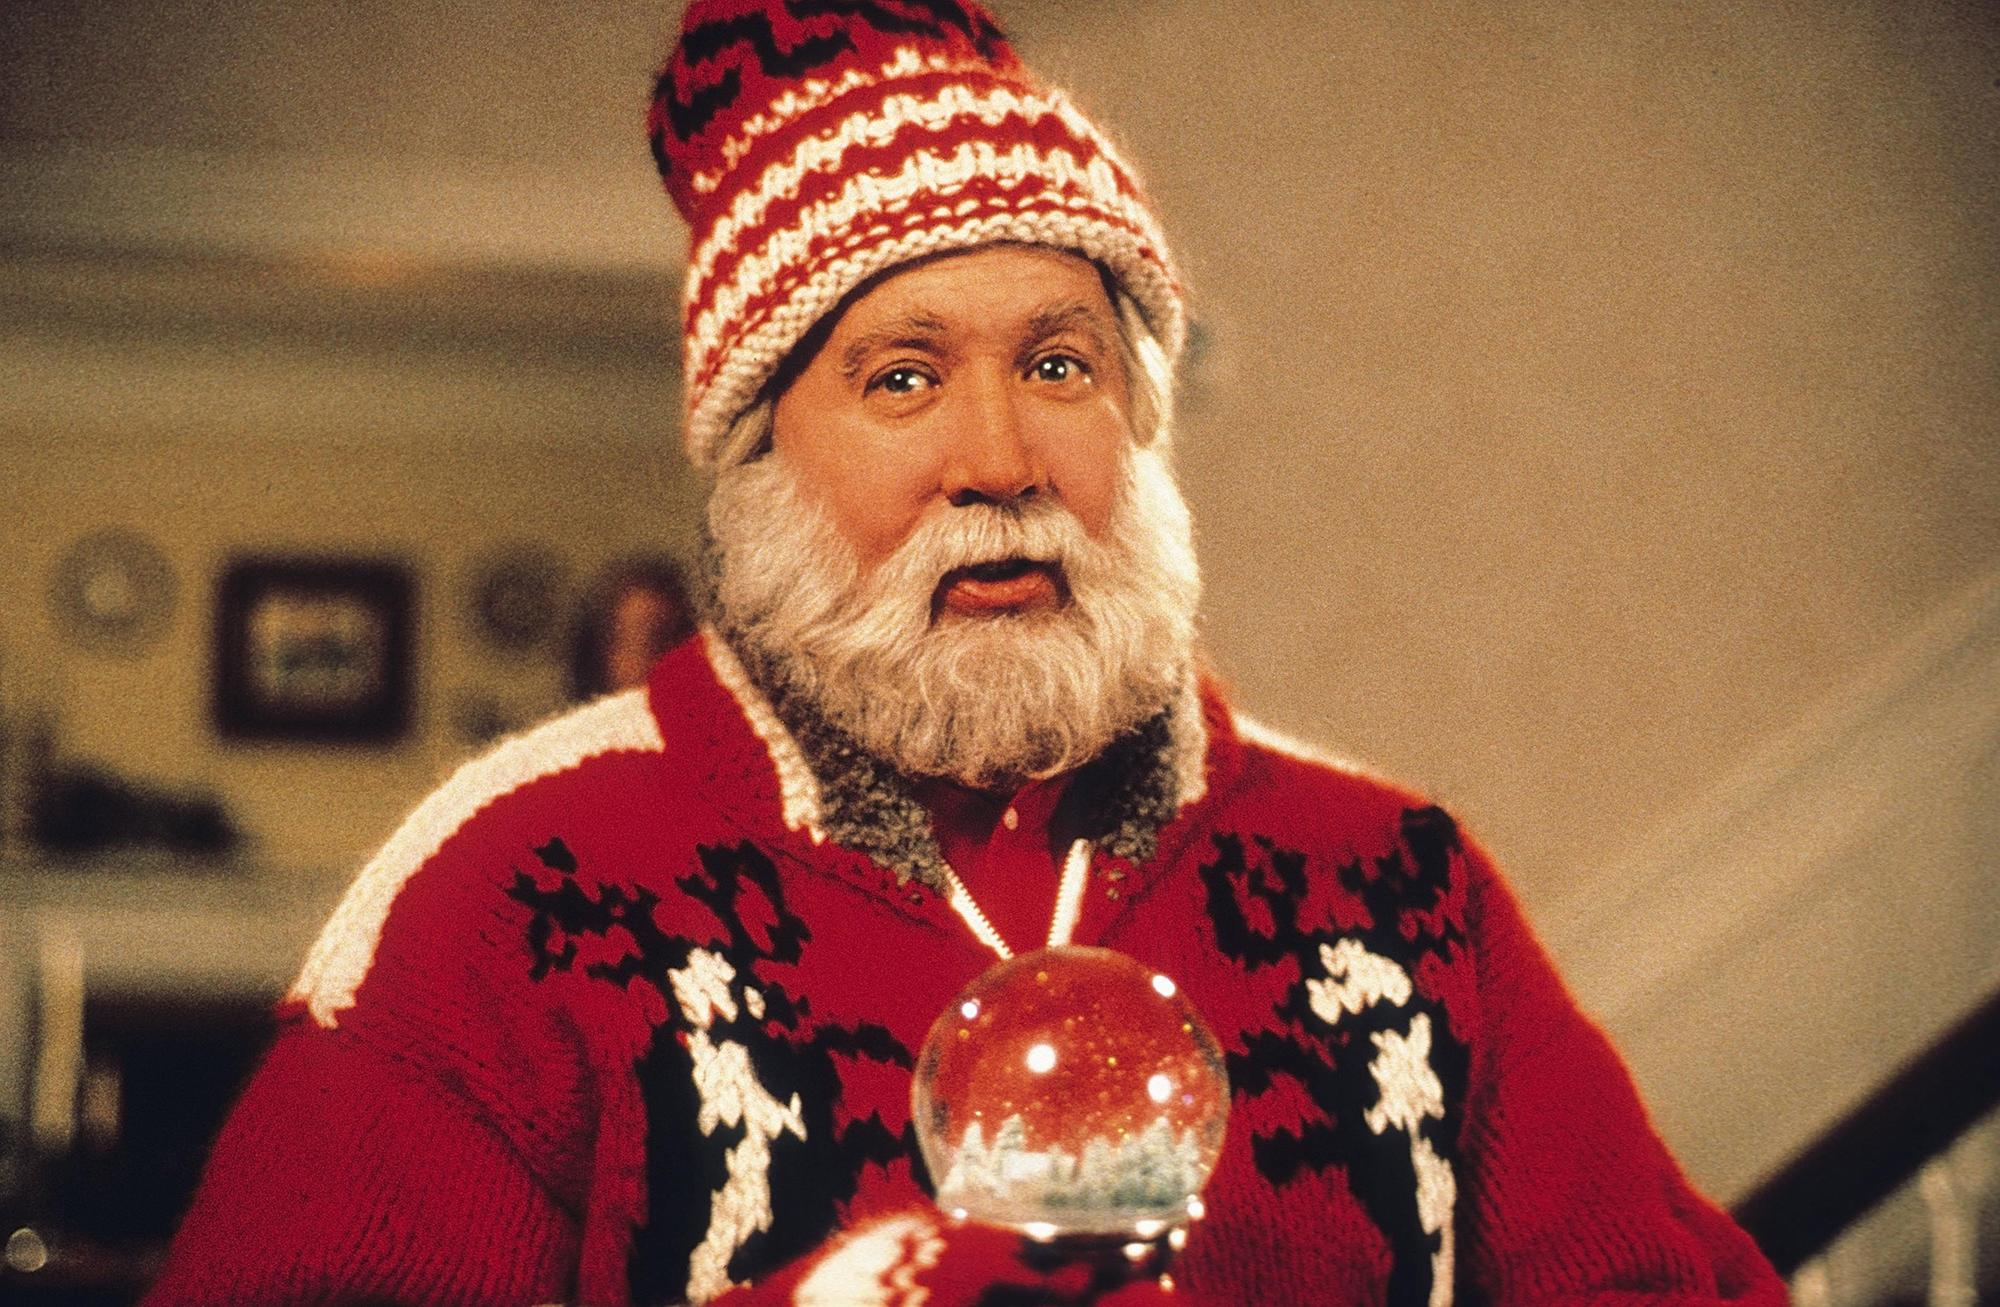 Tim Allen dans "The Santa Clause" en 1994. [AFP]